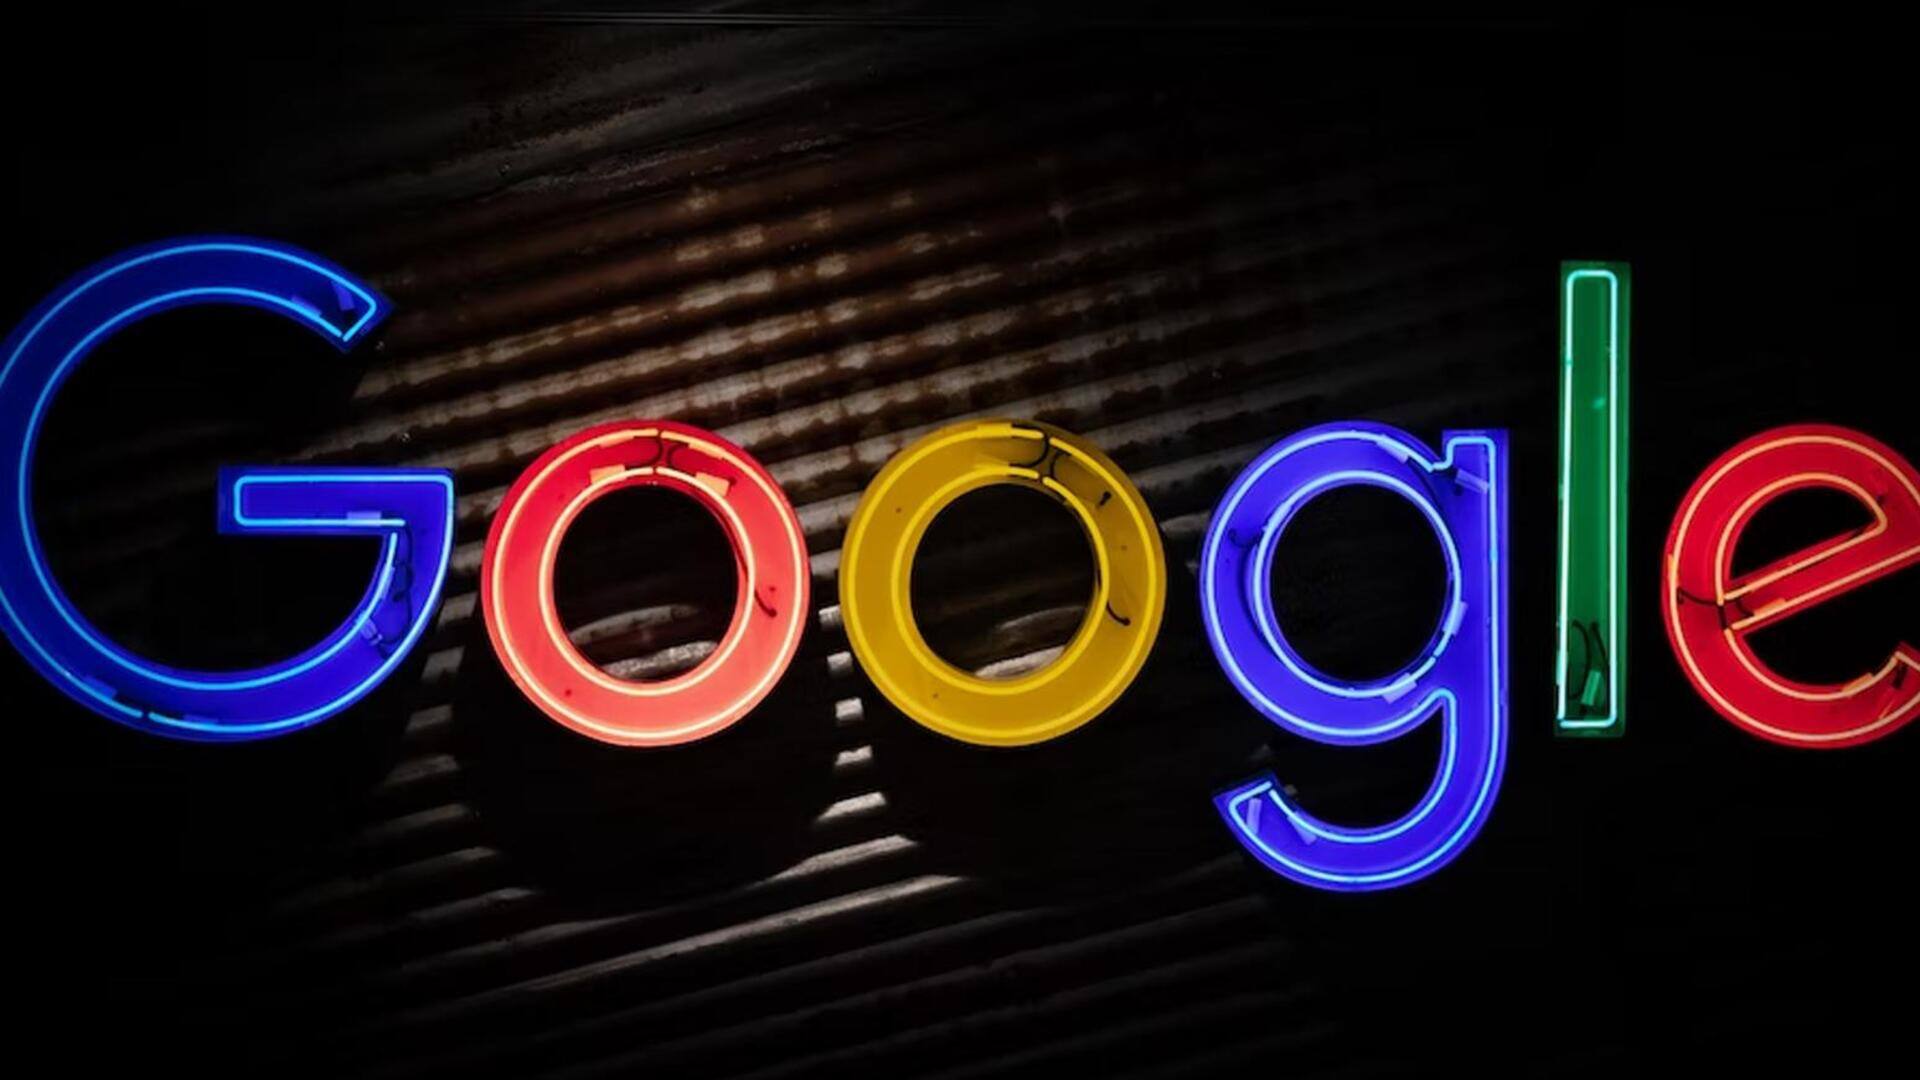 गूगल डॉक्स यूजर्स कमेंट्स पर दे सकेंगे इमोजी रिएक्शन, कंपनी नए फीचर पर कर रही काम